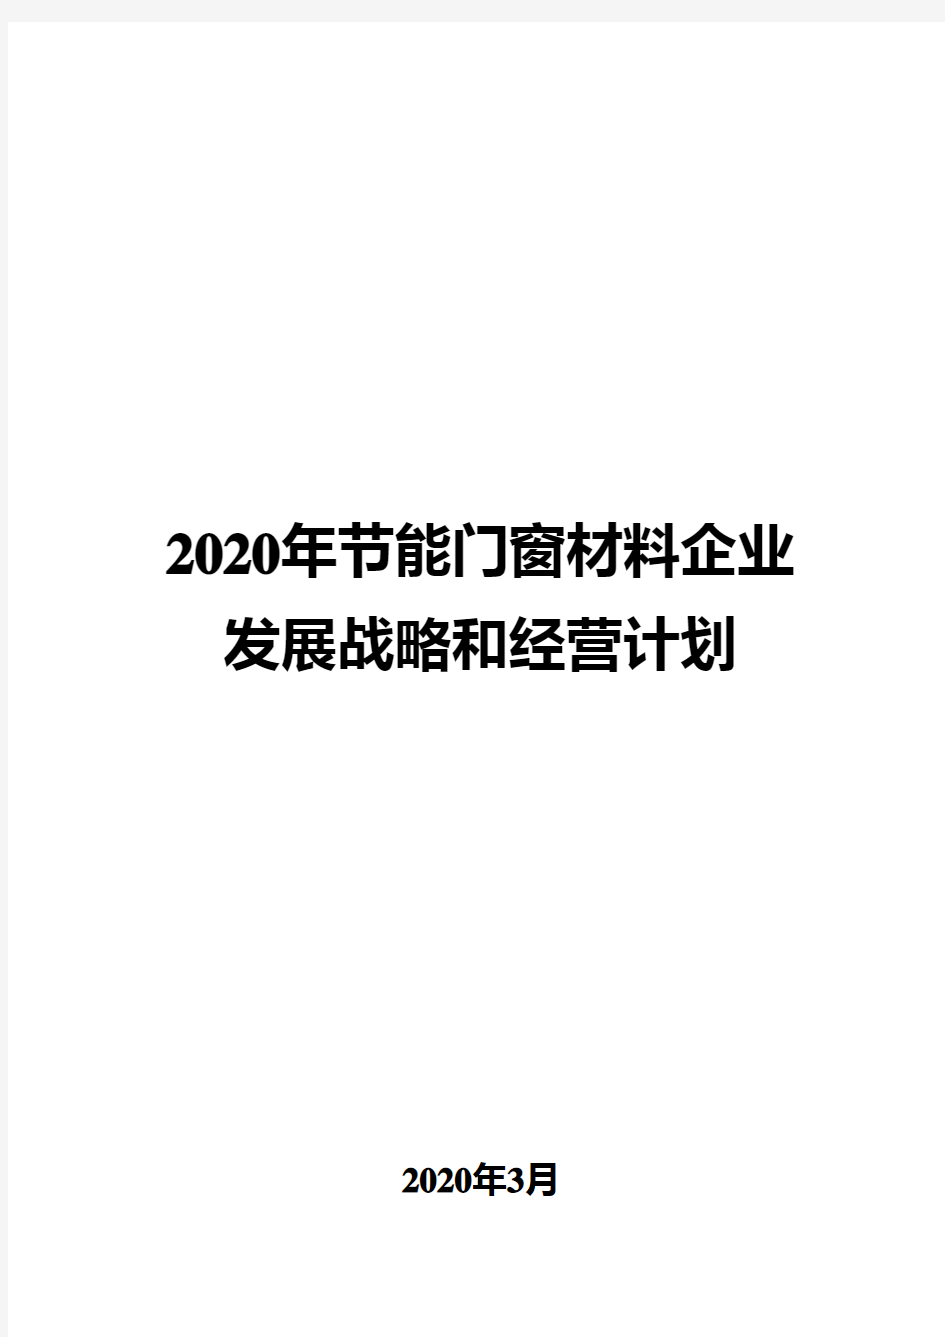 2020年节能门窗材料企业发展战略和经营计划